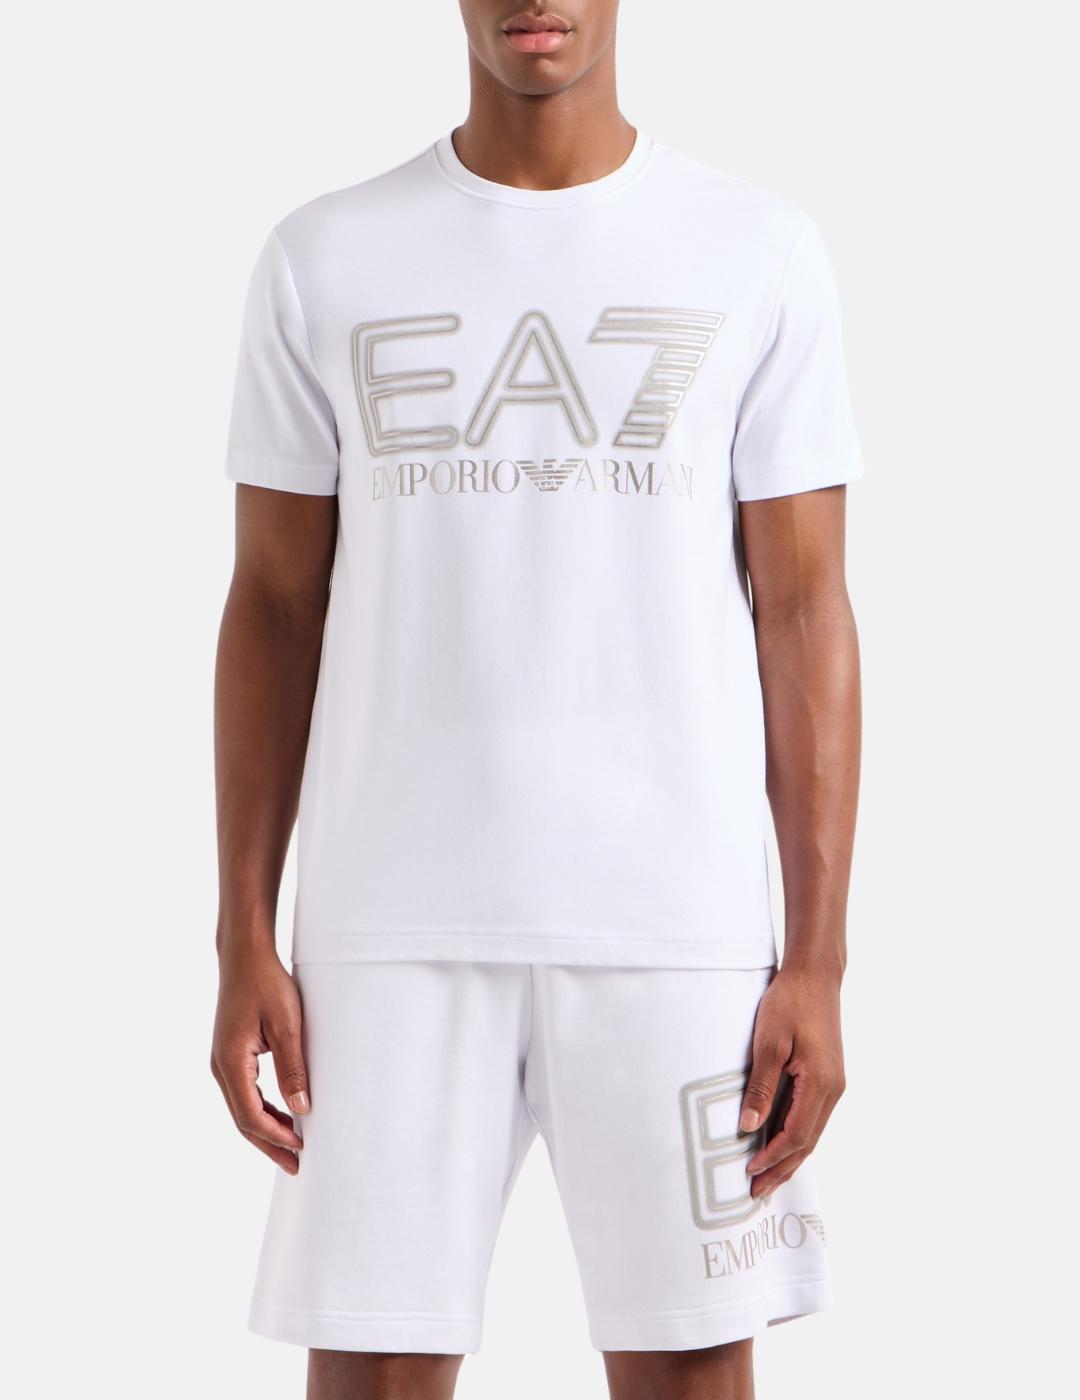 Camiseta EA7 blanca maxilogo plata hombre